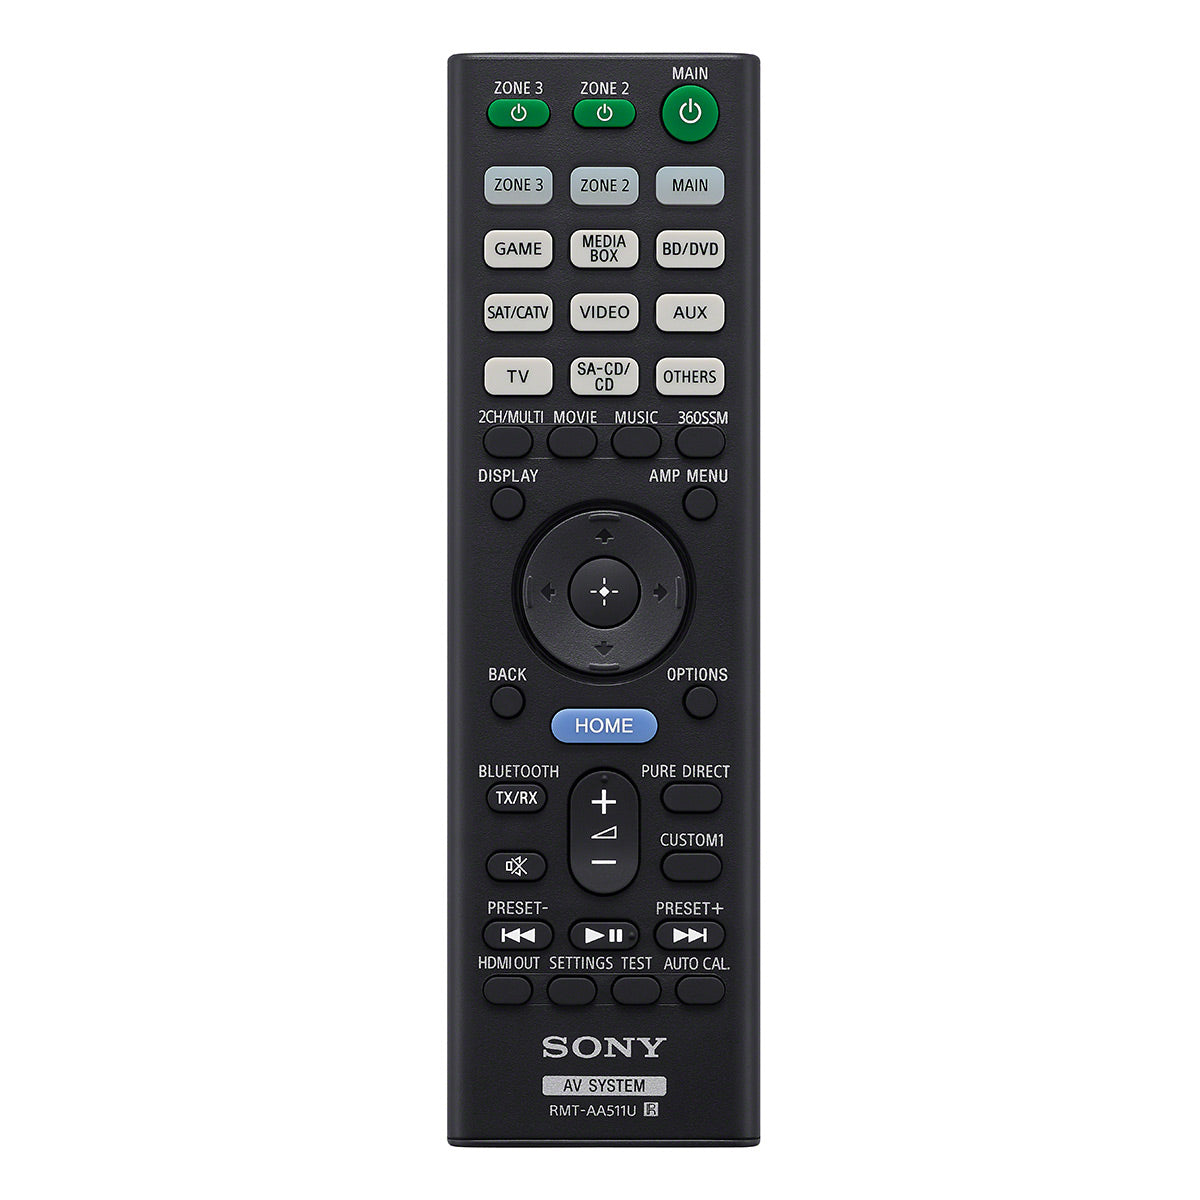 Sony STR-AZ1000ES 7.2 Channel 8K Home Theater AV Receiver with Sonos Port Wi-Fi Network Streamer